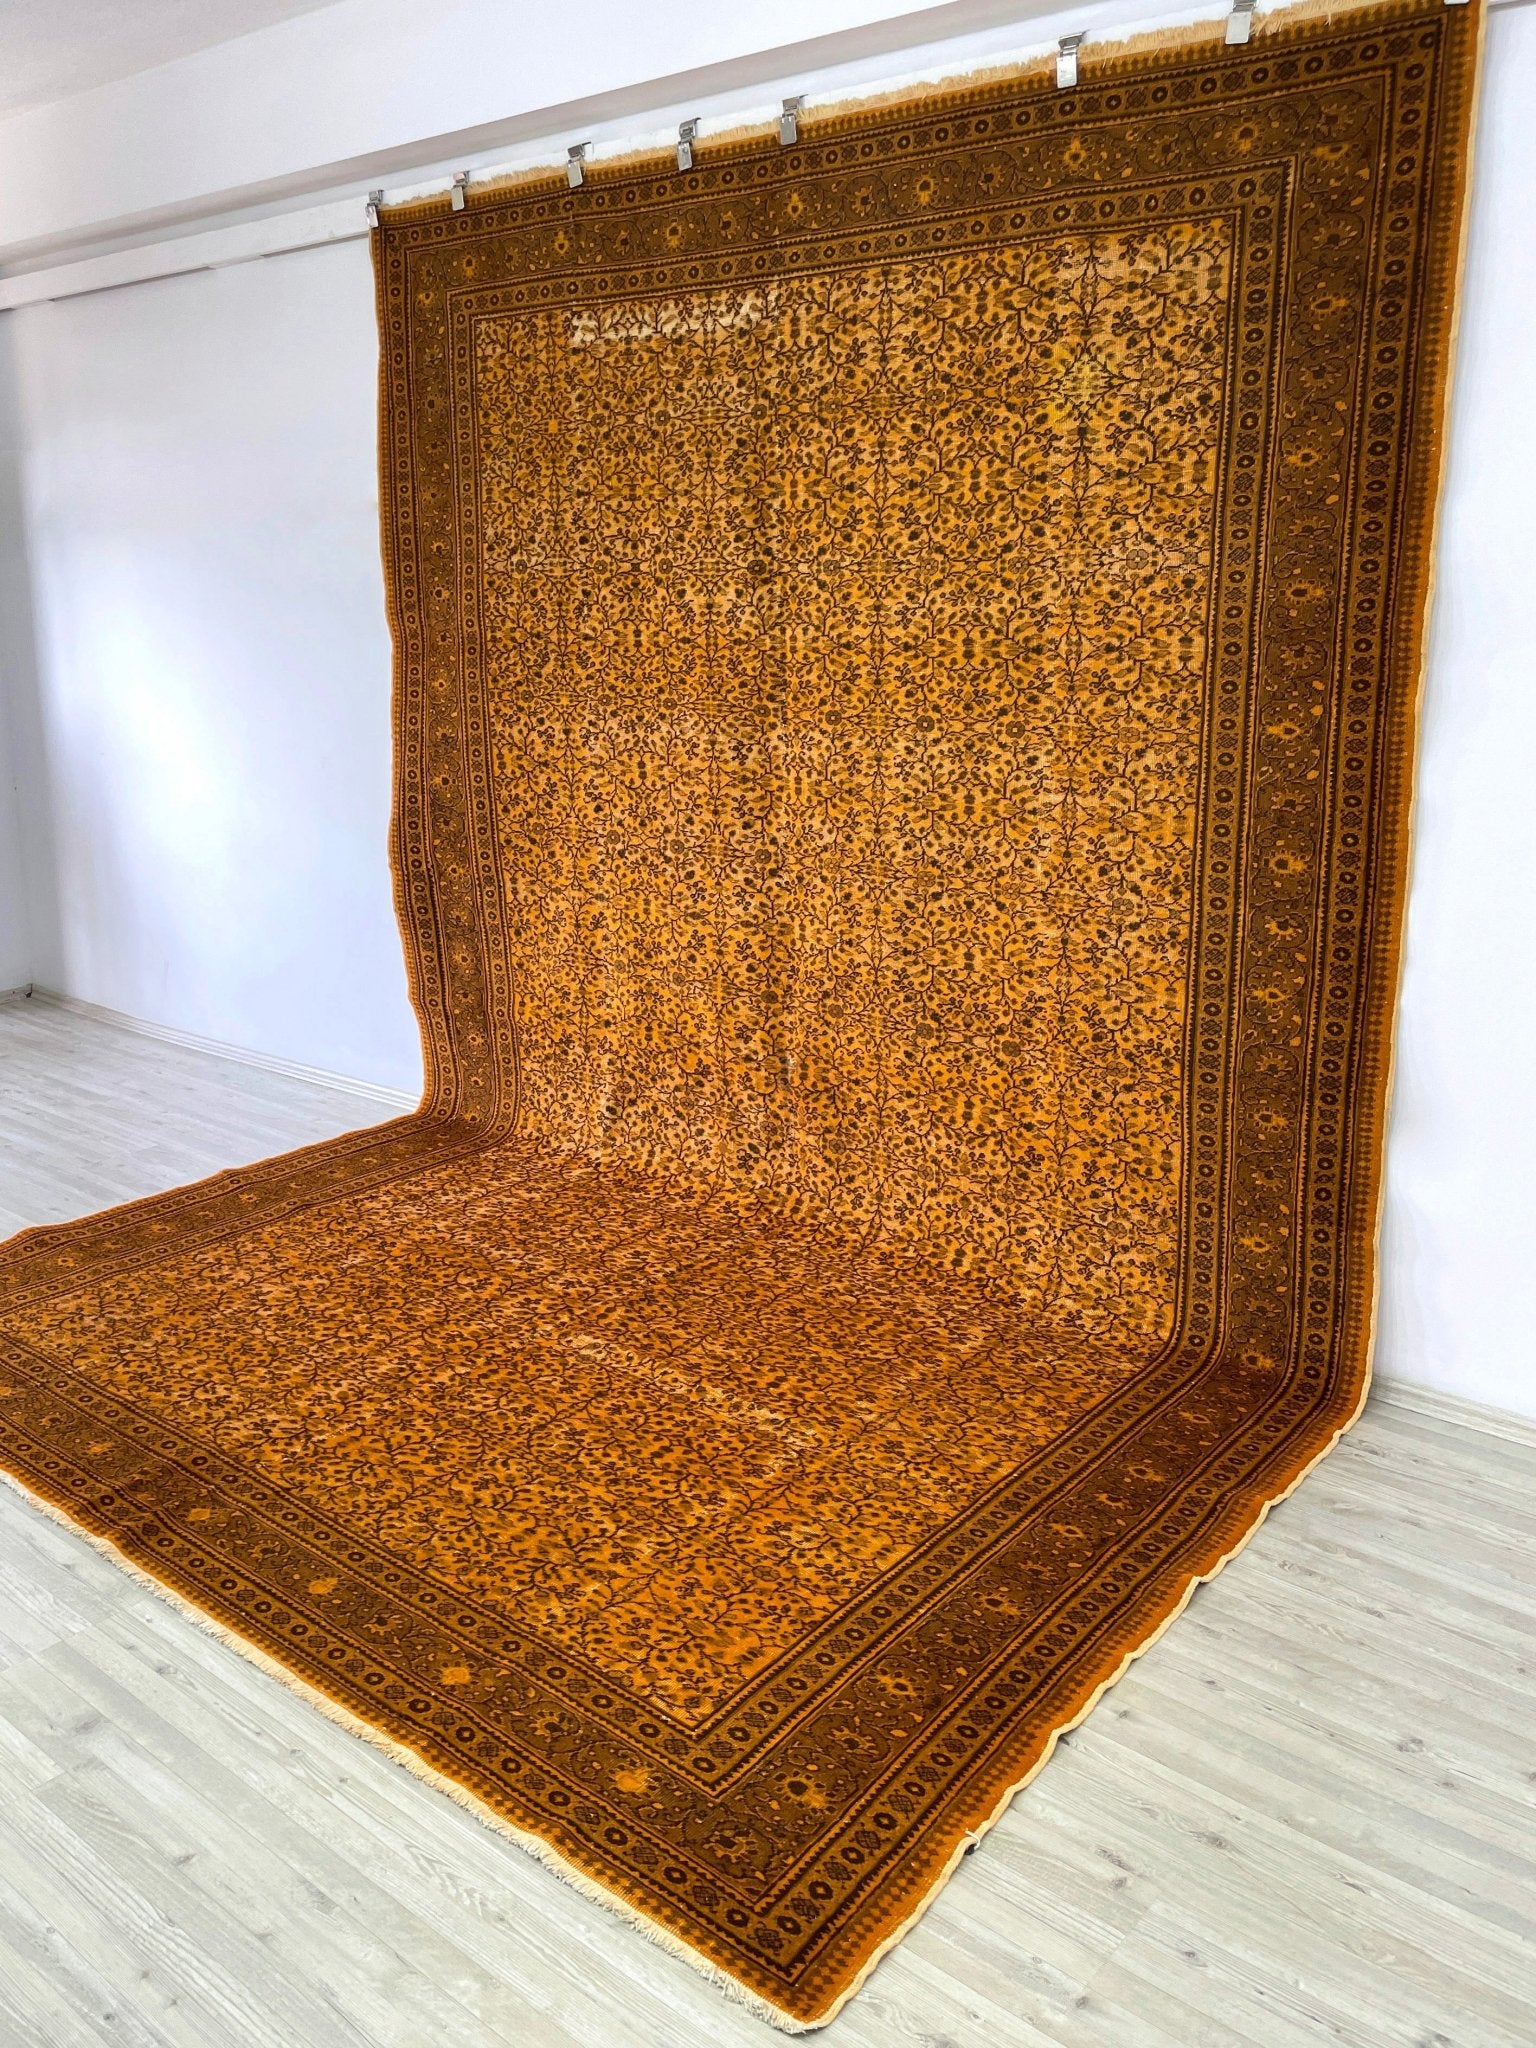 orange vintage rug shop rug san francisco bay area palo alto berkeley east bay online 